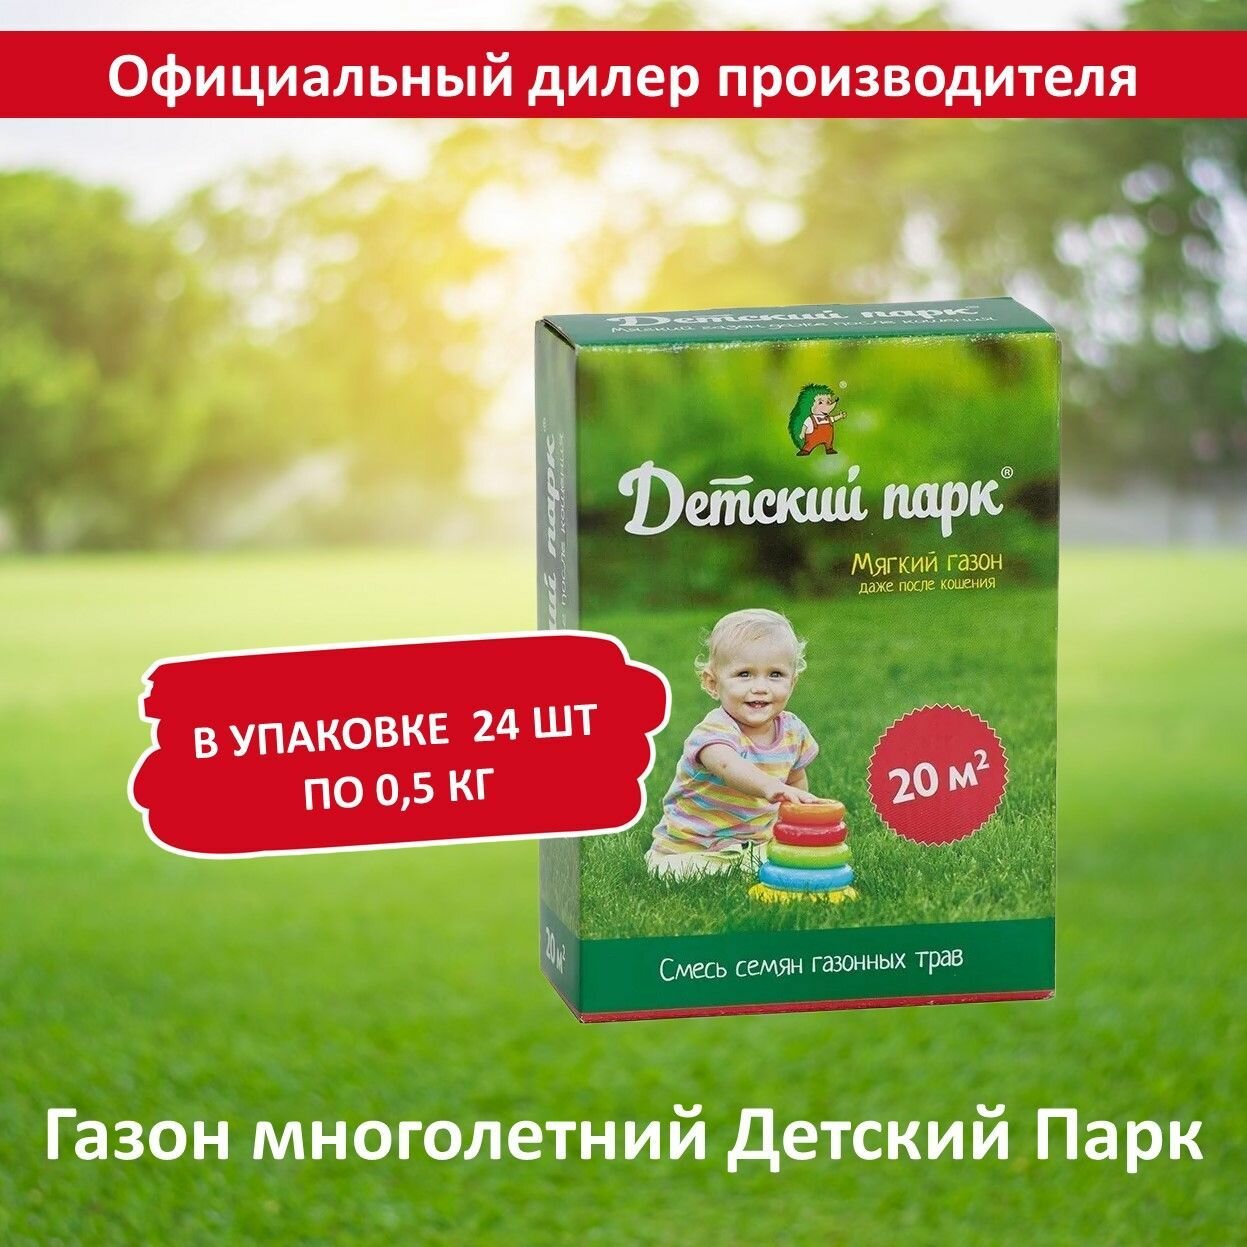 Семена газона для создания детских игровых площадок детский парк 05 кг х 24 шт (12 кг)